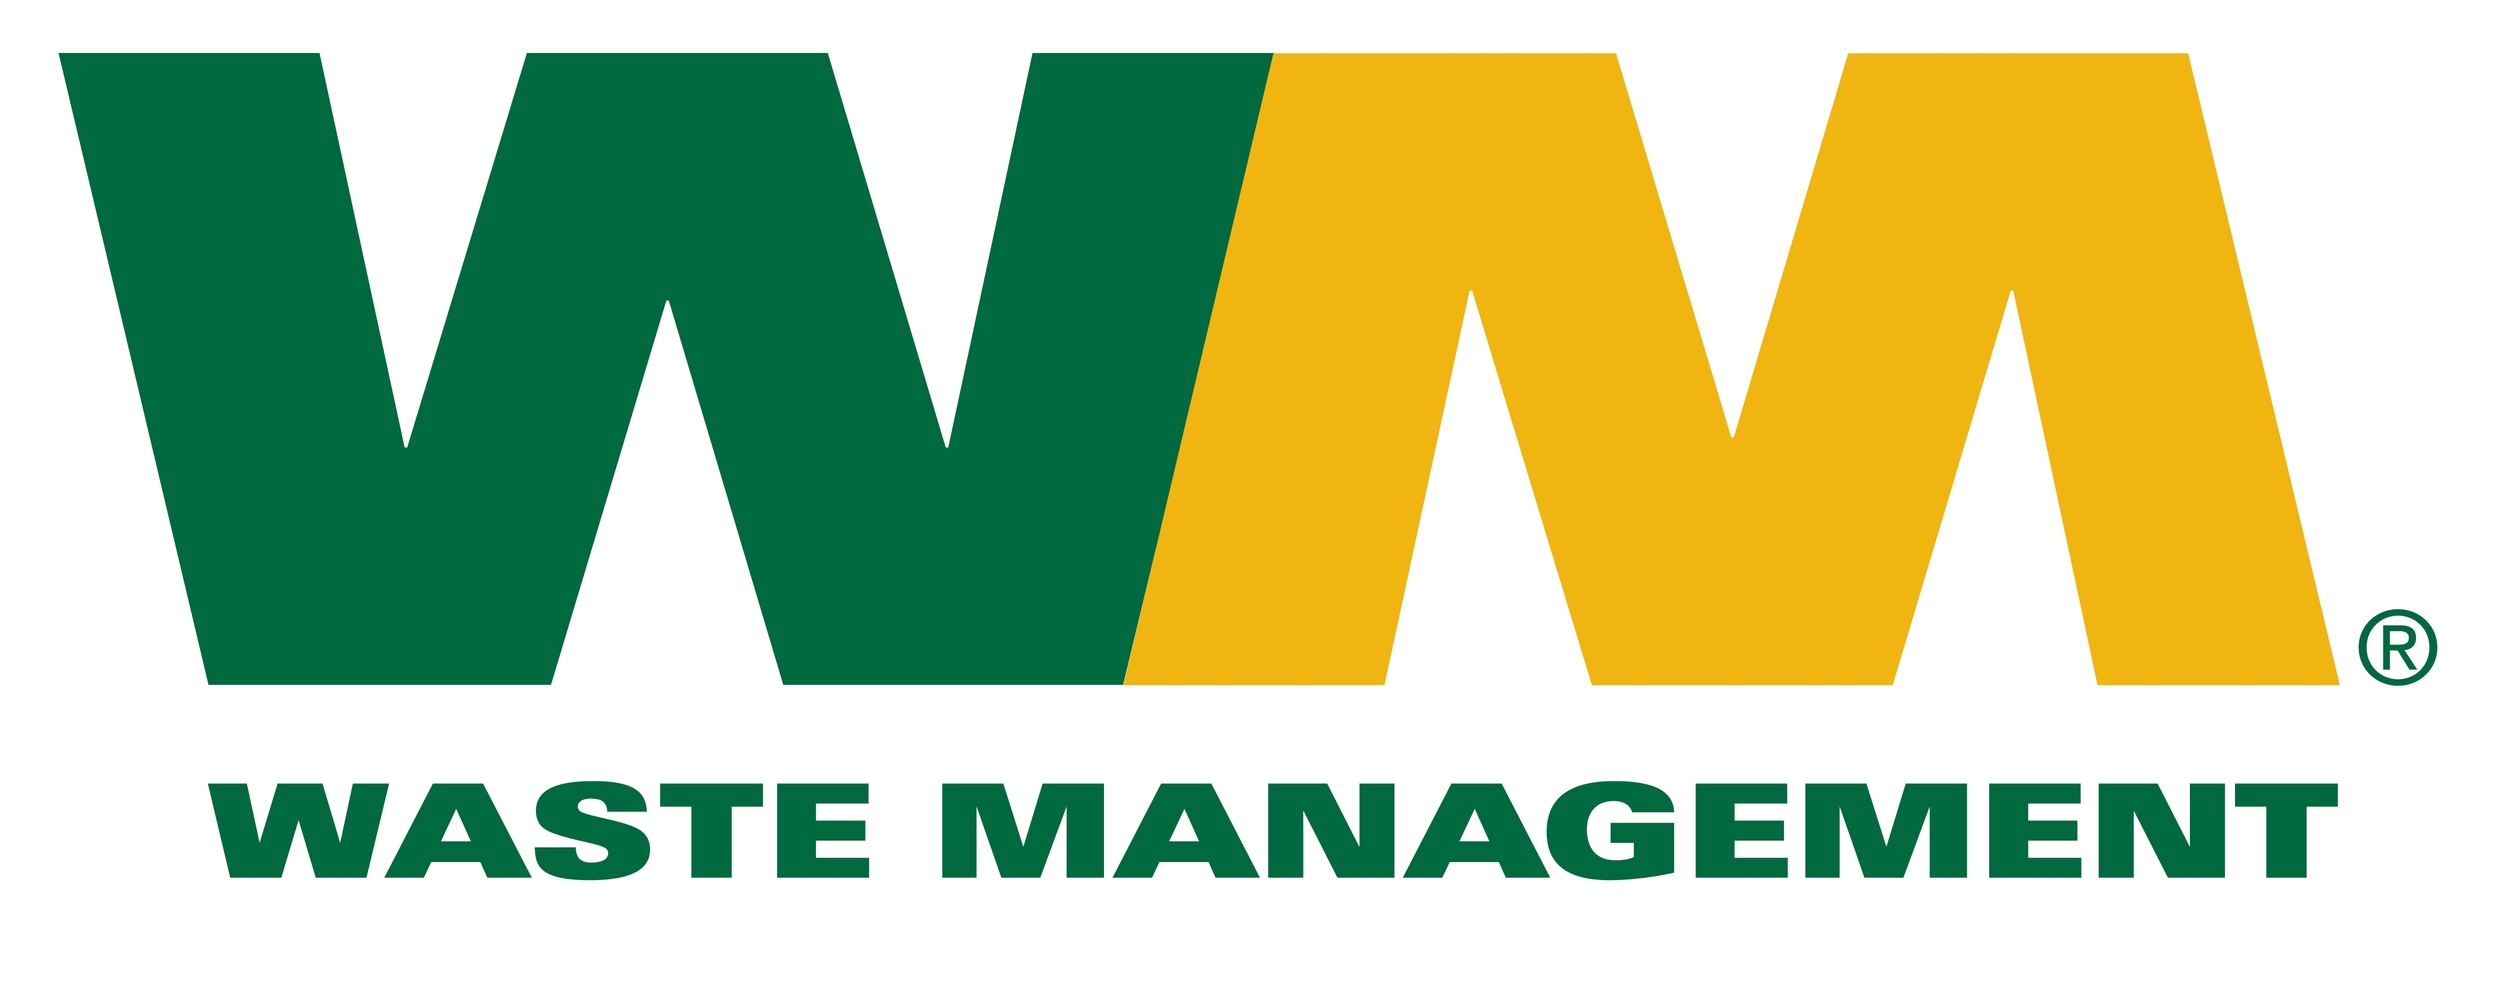 WM-Logo-JPEG.jpg